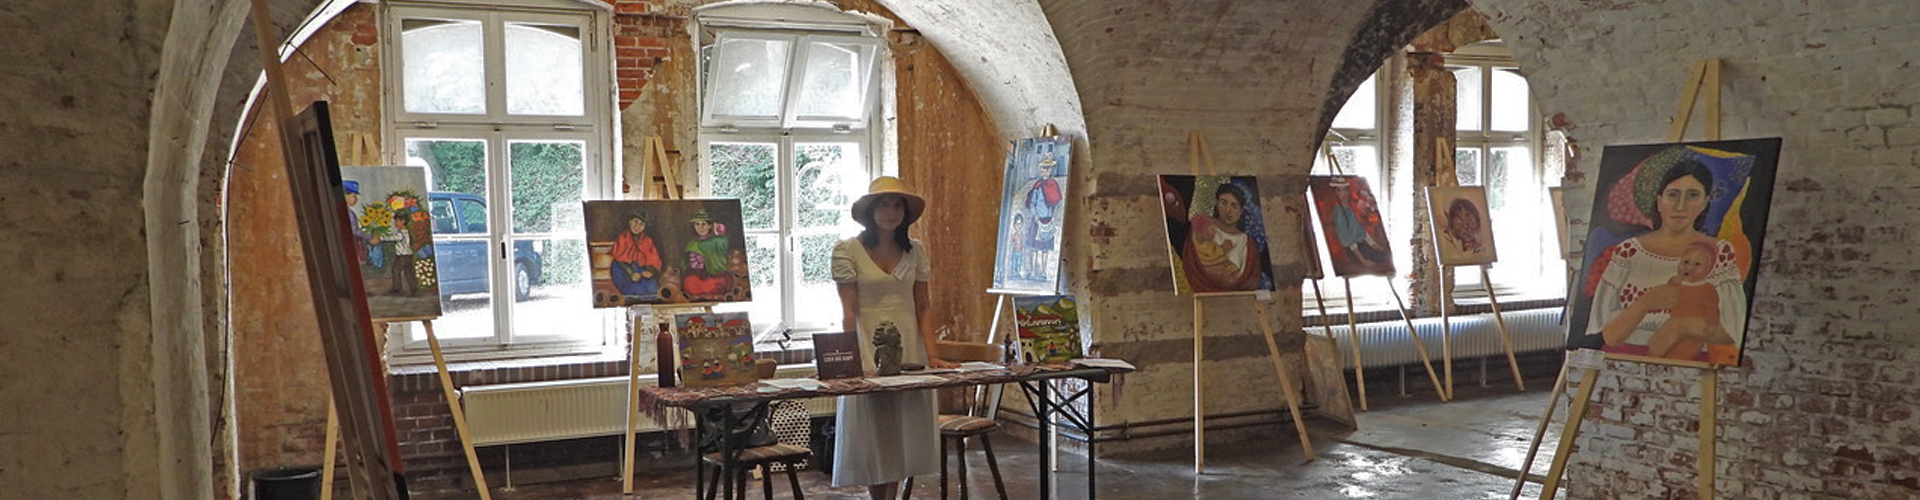 Mamakay Exposicion de pinturas